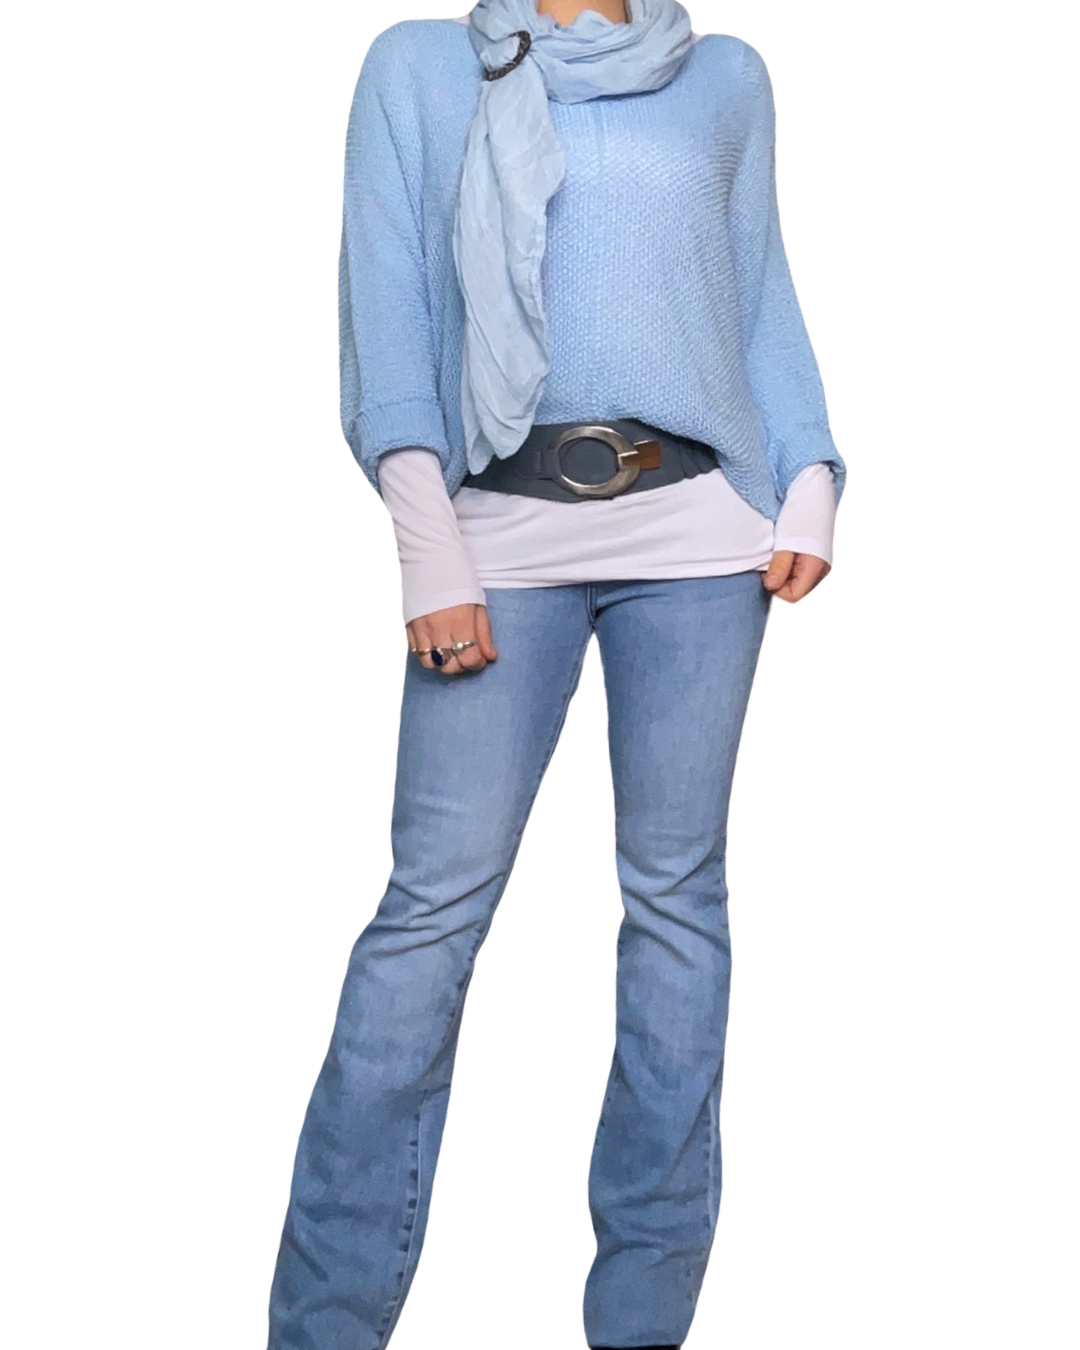 Chandail bleu pour femme à manche longue avec ceinture, foulard, chandail blanc à l'intérieur et jeans.